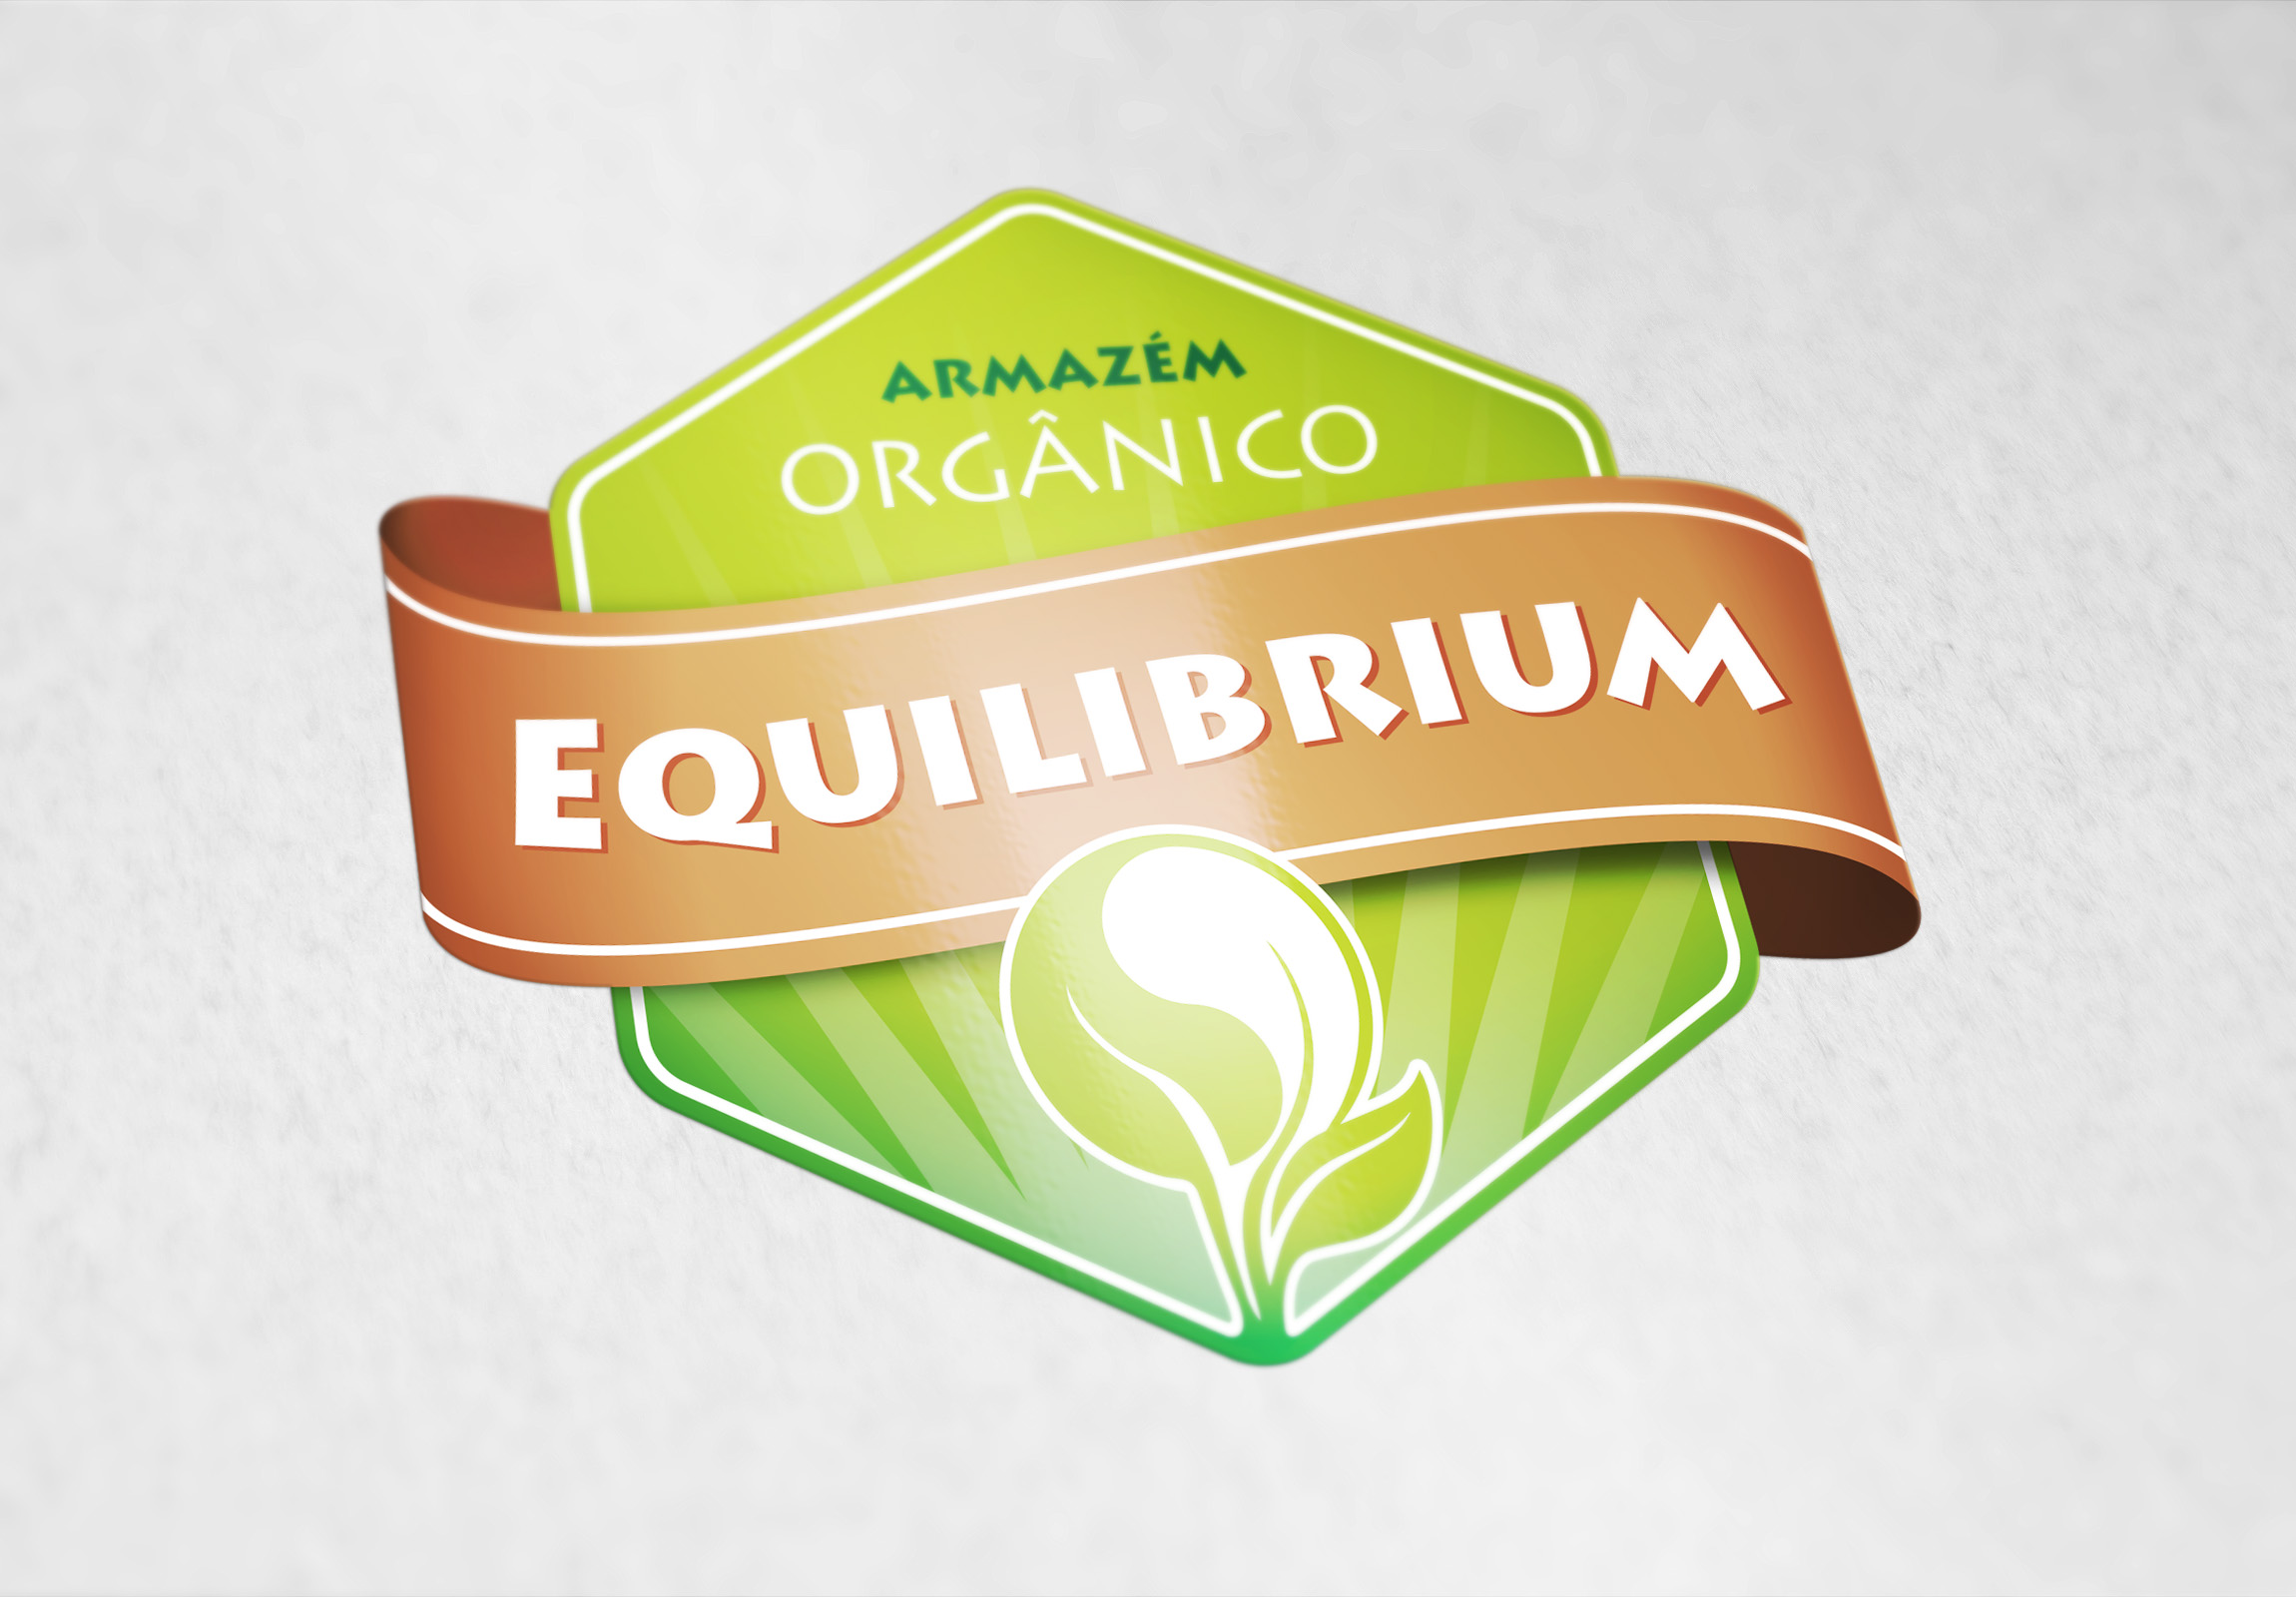 Logo Armazem Ecologico Equilibrium